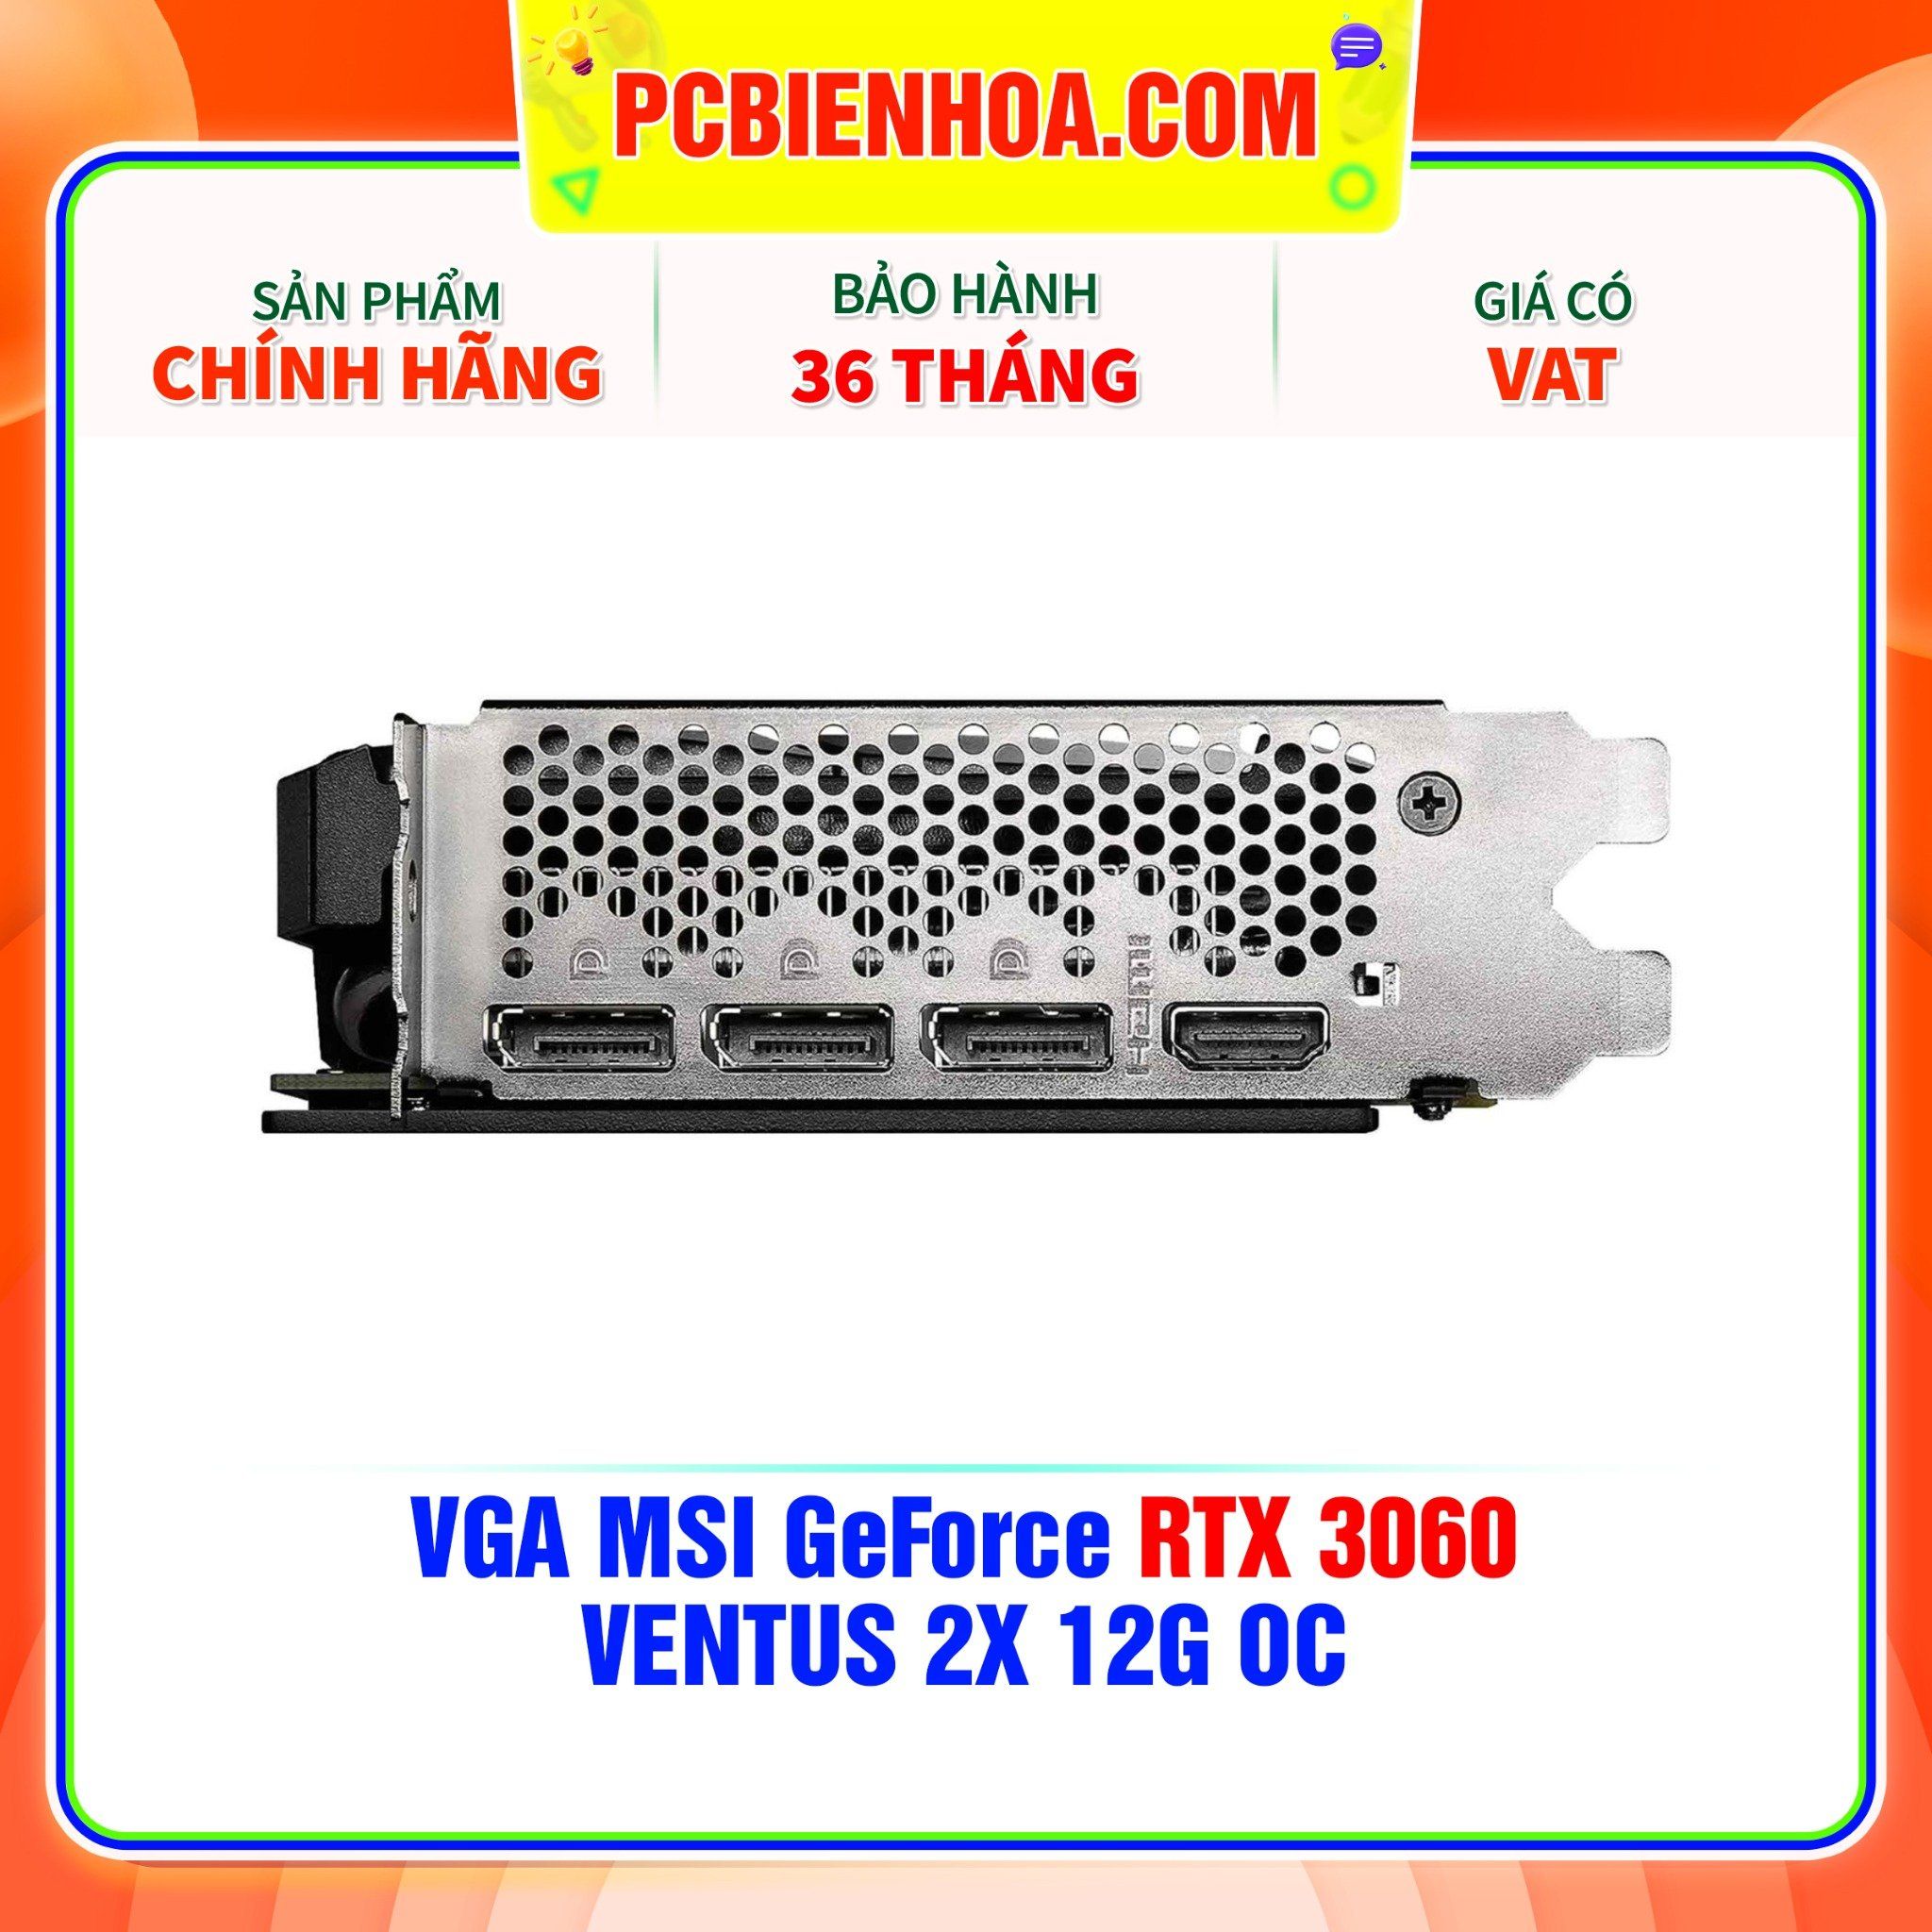  VGA MSI GeForce RTX 3060 VENTUS 2X 12G OC GDDR6 